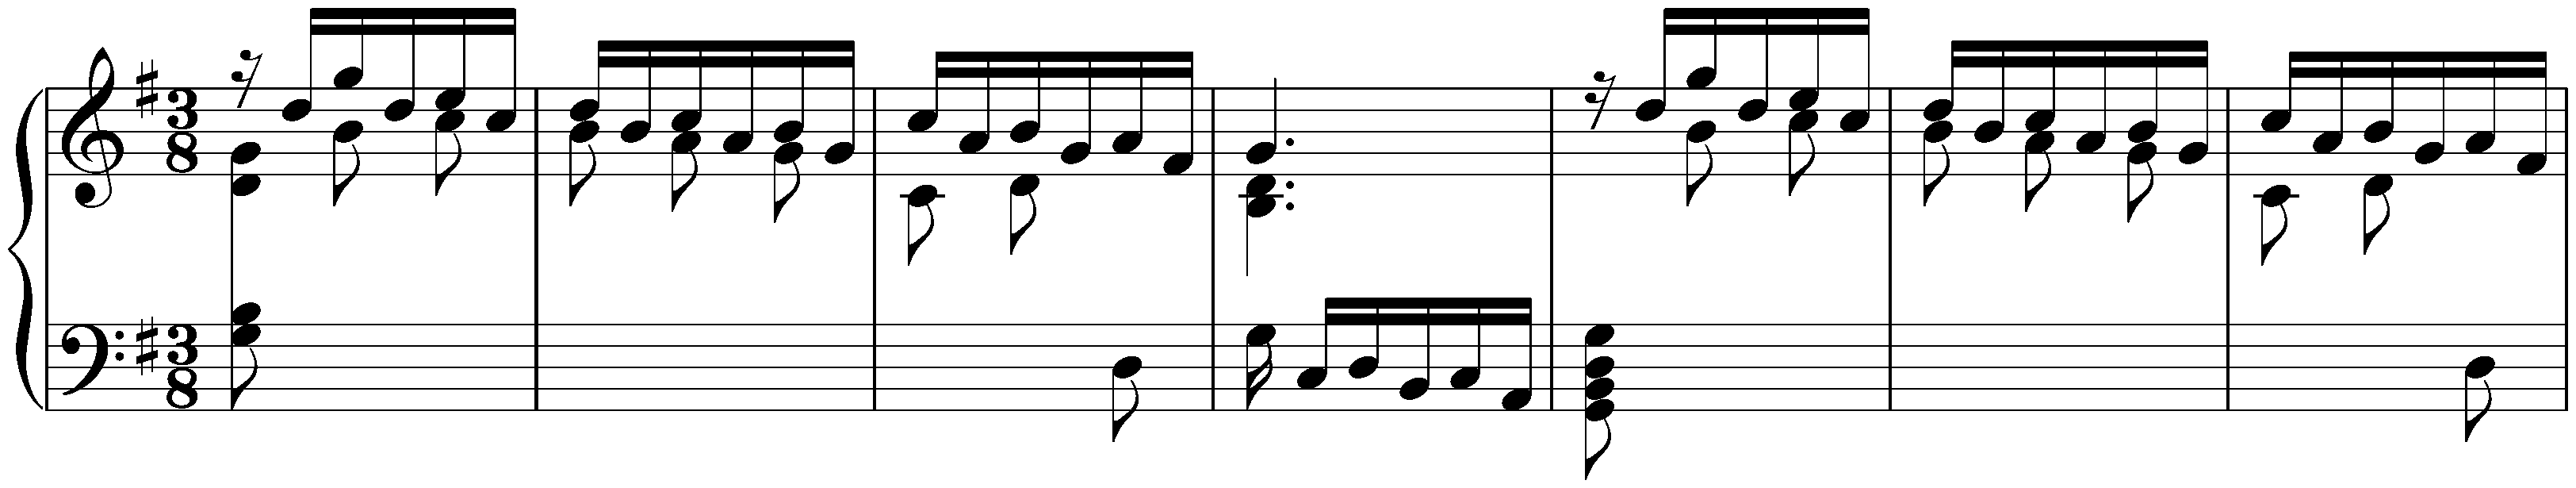 Sonatas found in Valladolid; 1. G major